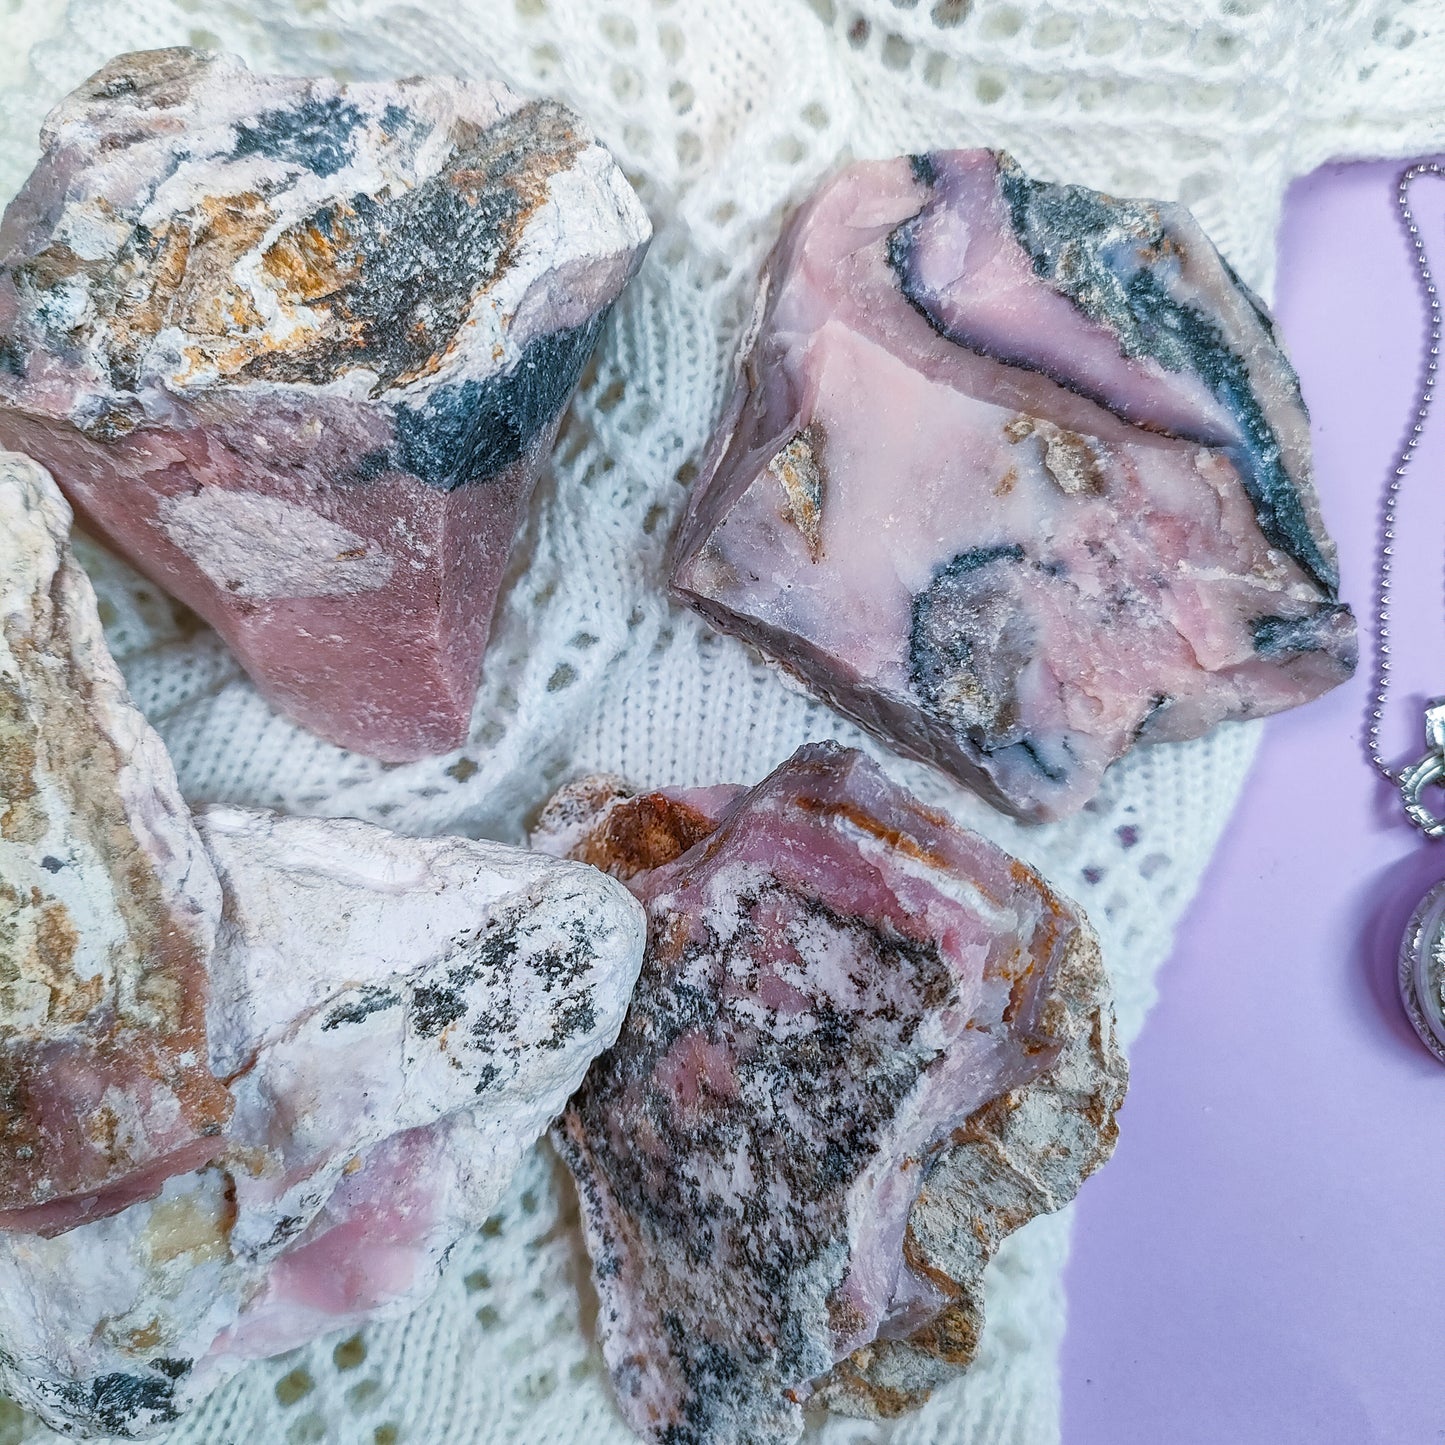 Pinkki opaali raaka